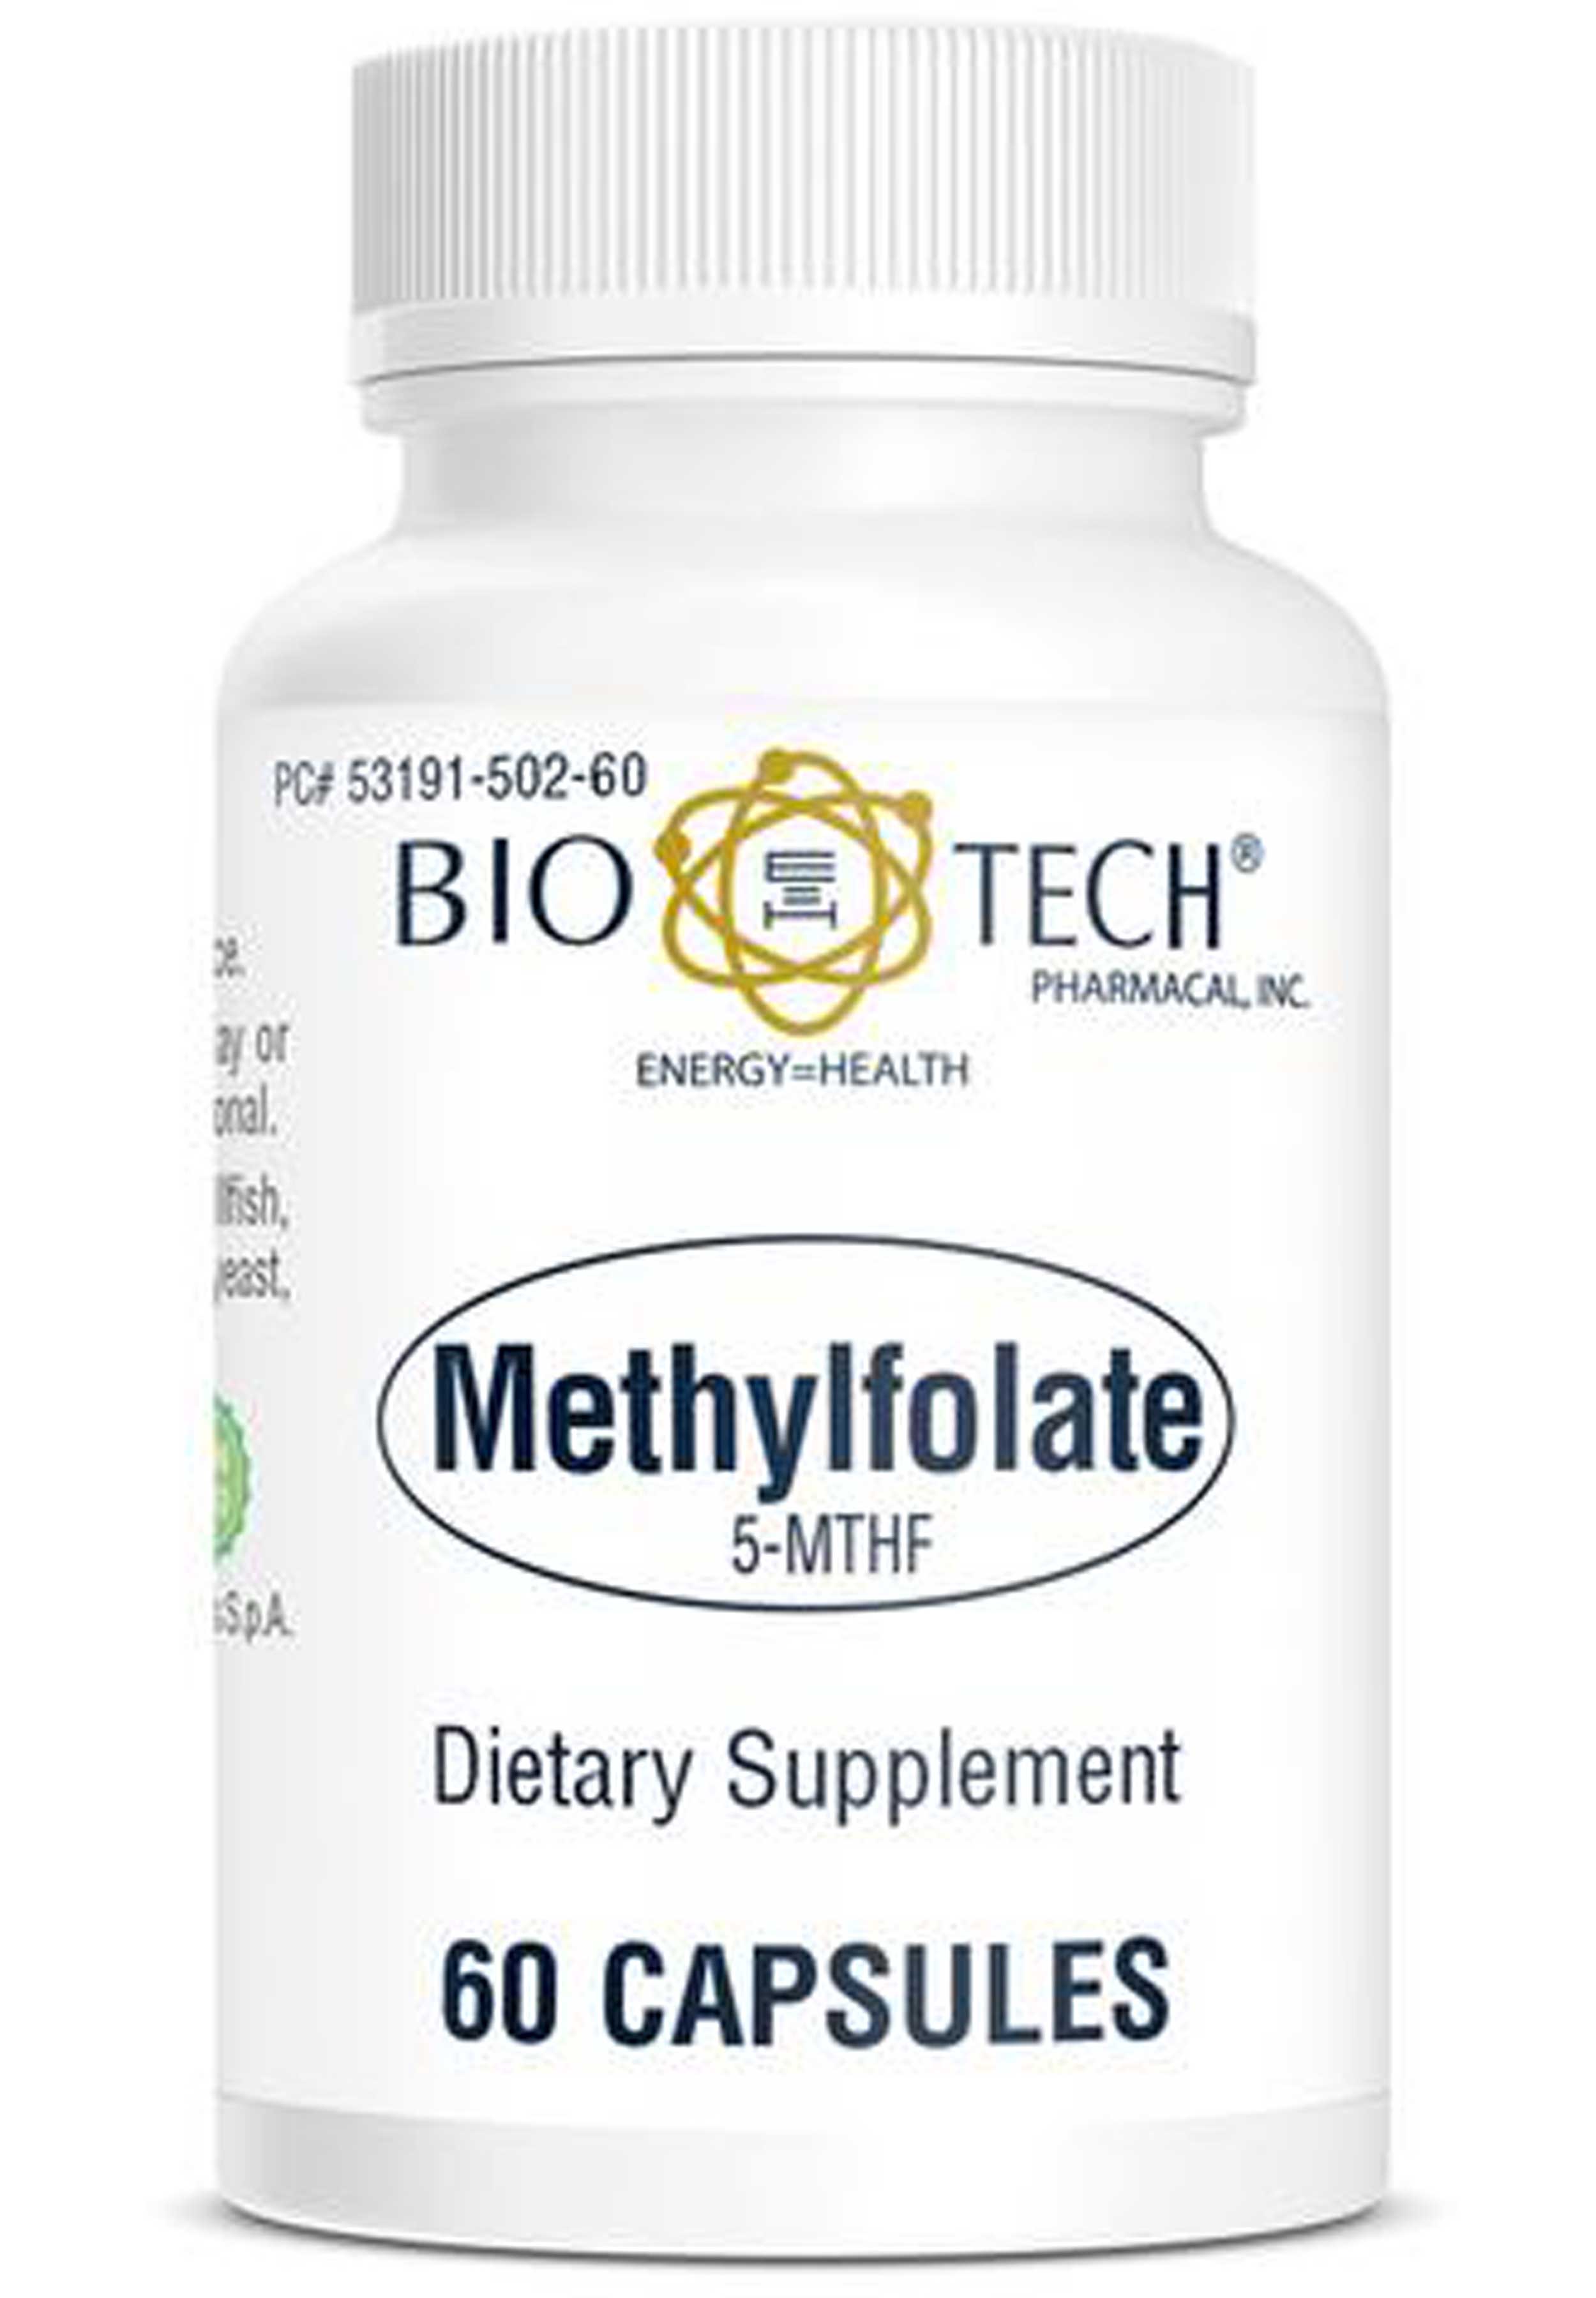 Bio-Tech Pharmacal Methylfolate (5-MTHF)